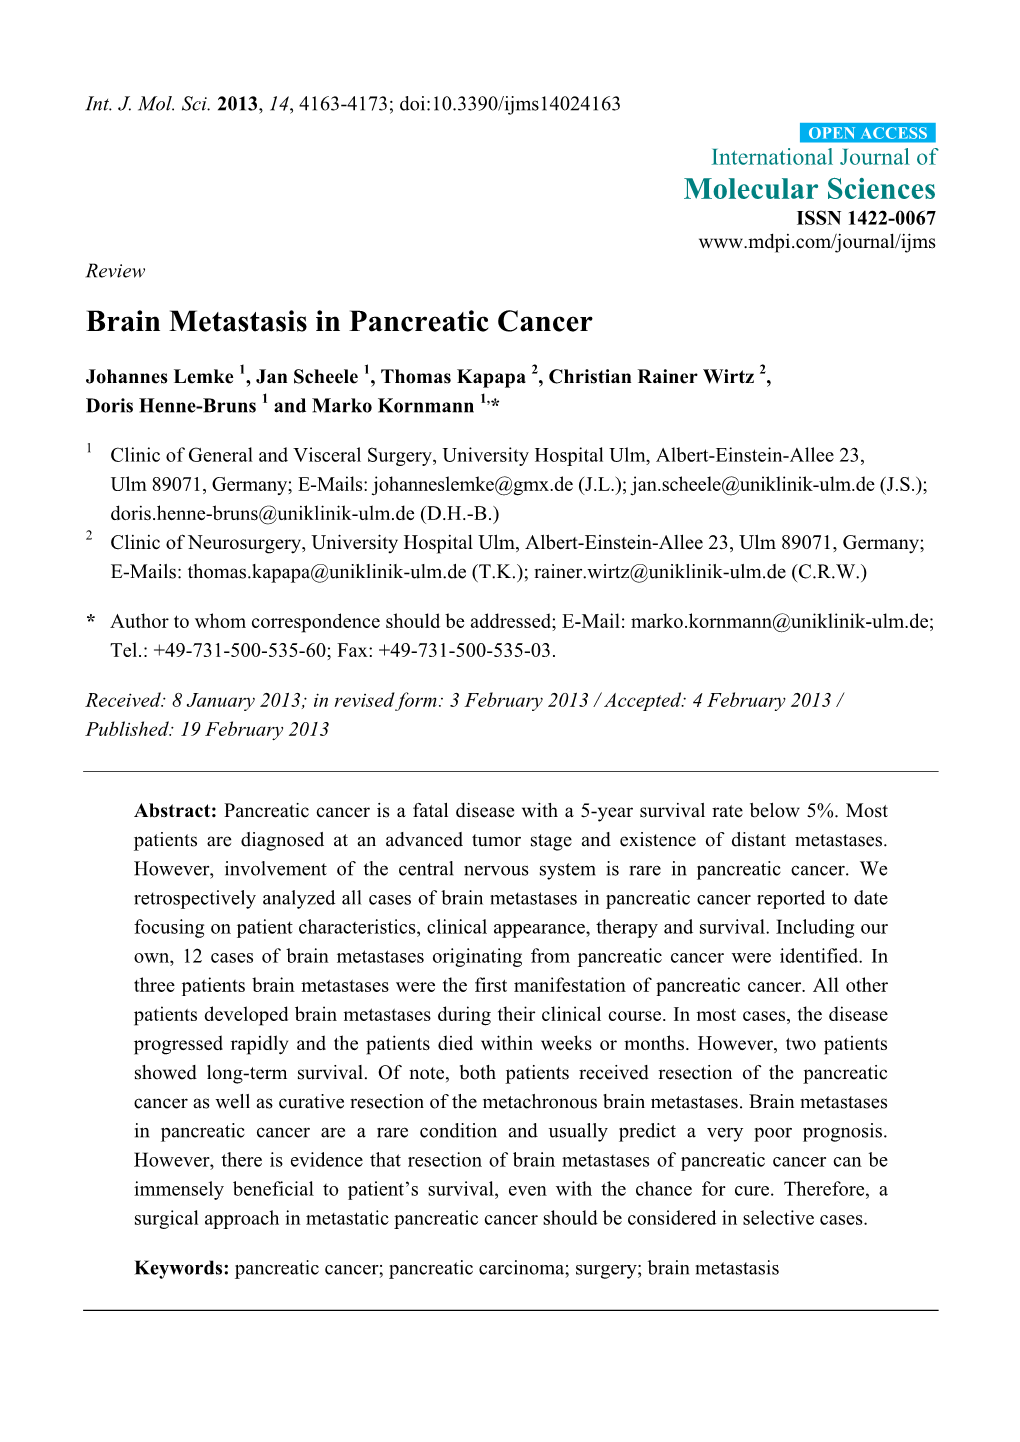 Brain Metastasis in Pancreatic Cancer